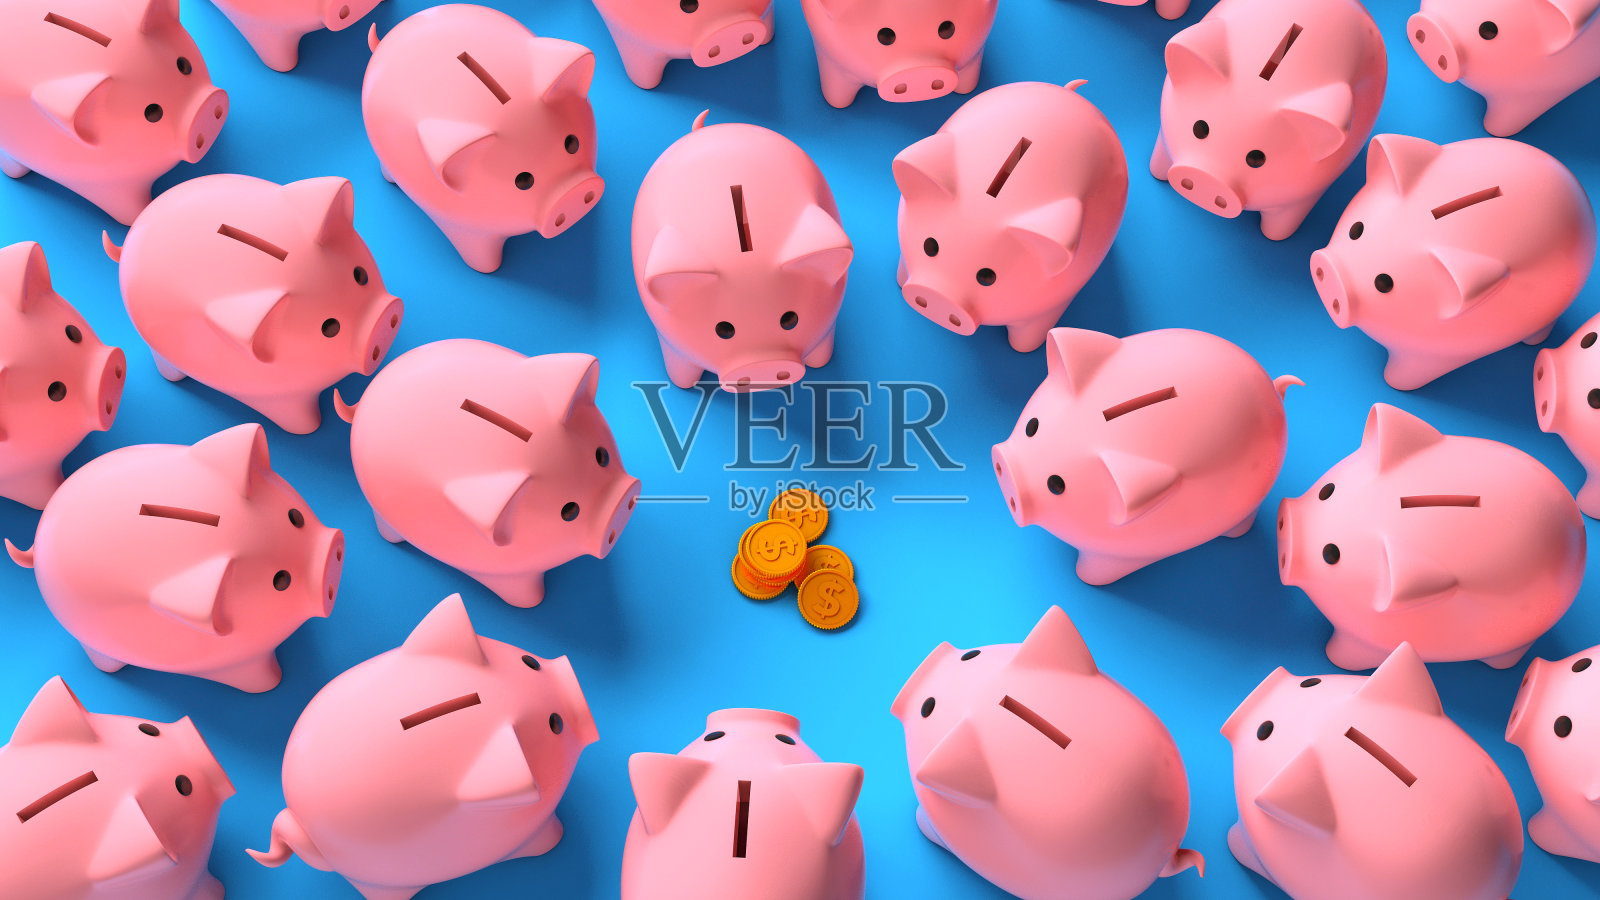 蓝色背景上的一堆硬币周围环绕着许多粉红色的小猪储蓄罐。利润分享。储蓄的收入照片摄影图片